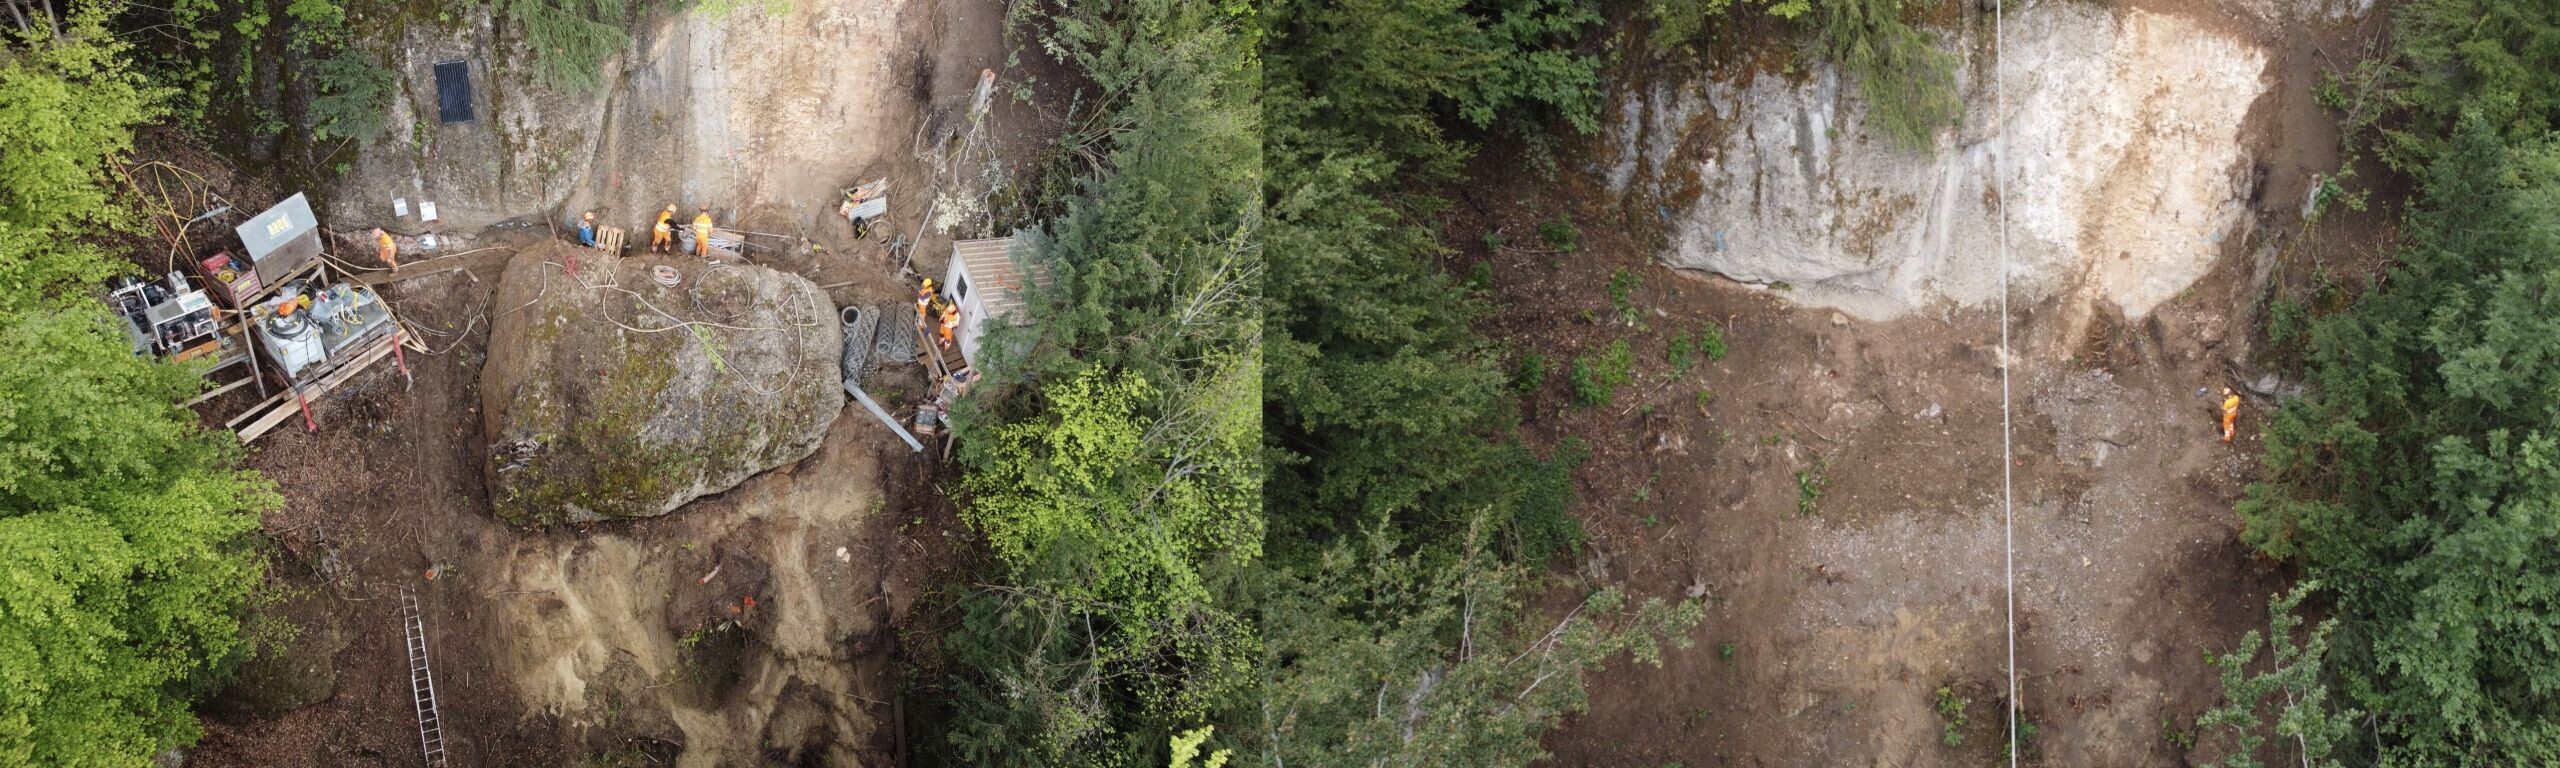 Felsblock im steilen Wald bei Oberarth erfolgreich abgetragen.